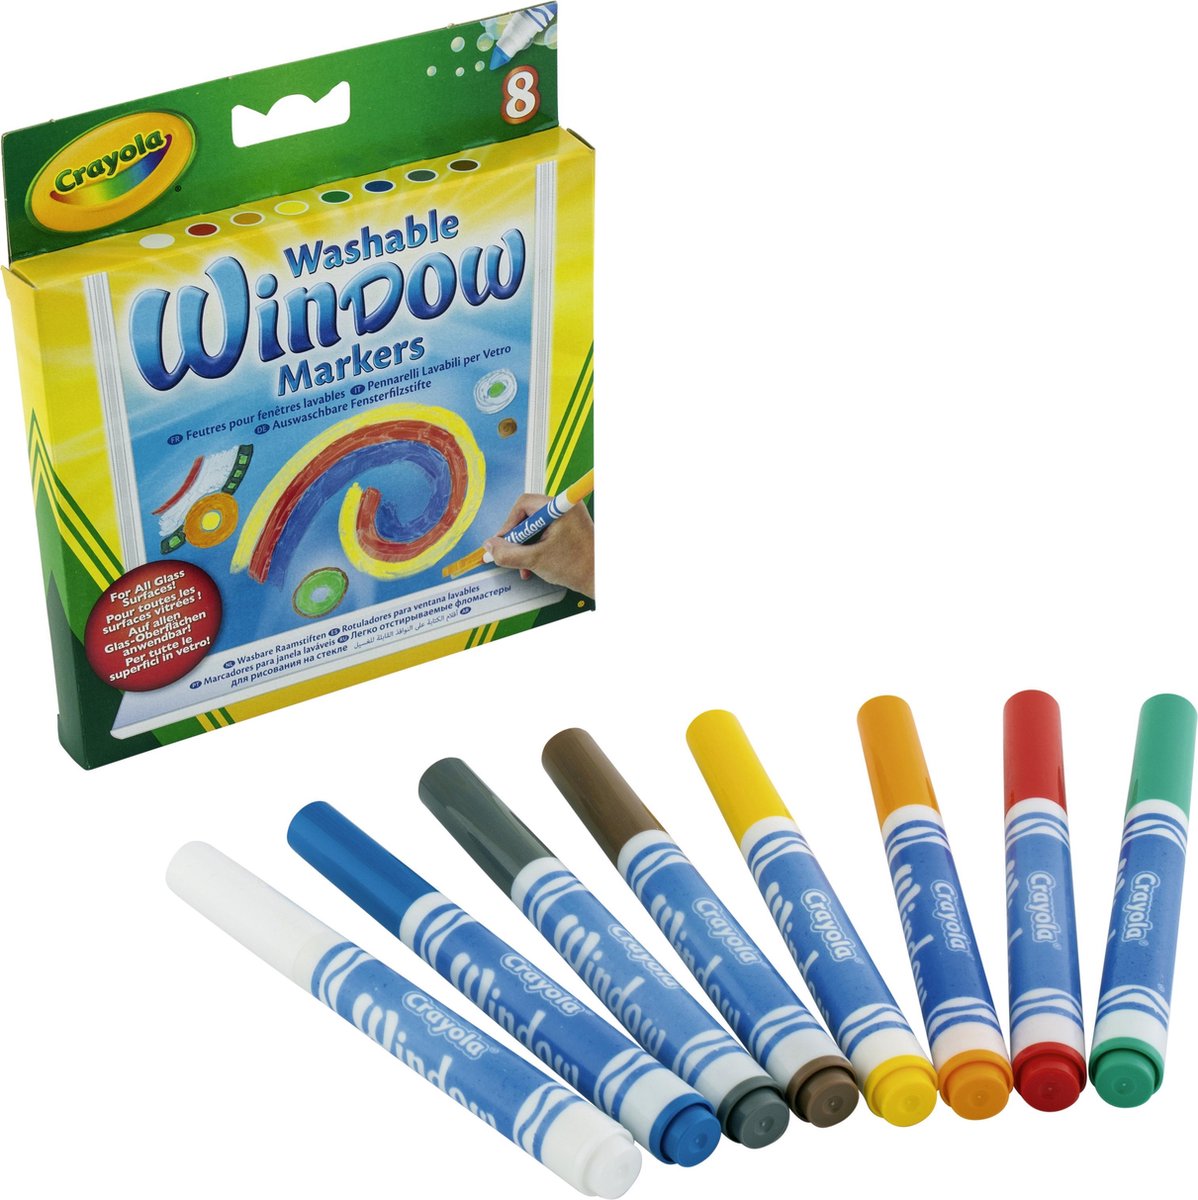 Afstudeeralbum Vegetatie maag Crayola - 8 Wasbare Raamstiften - Tekenen op Gespiegelde Oppervlakken |  bol.com